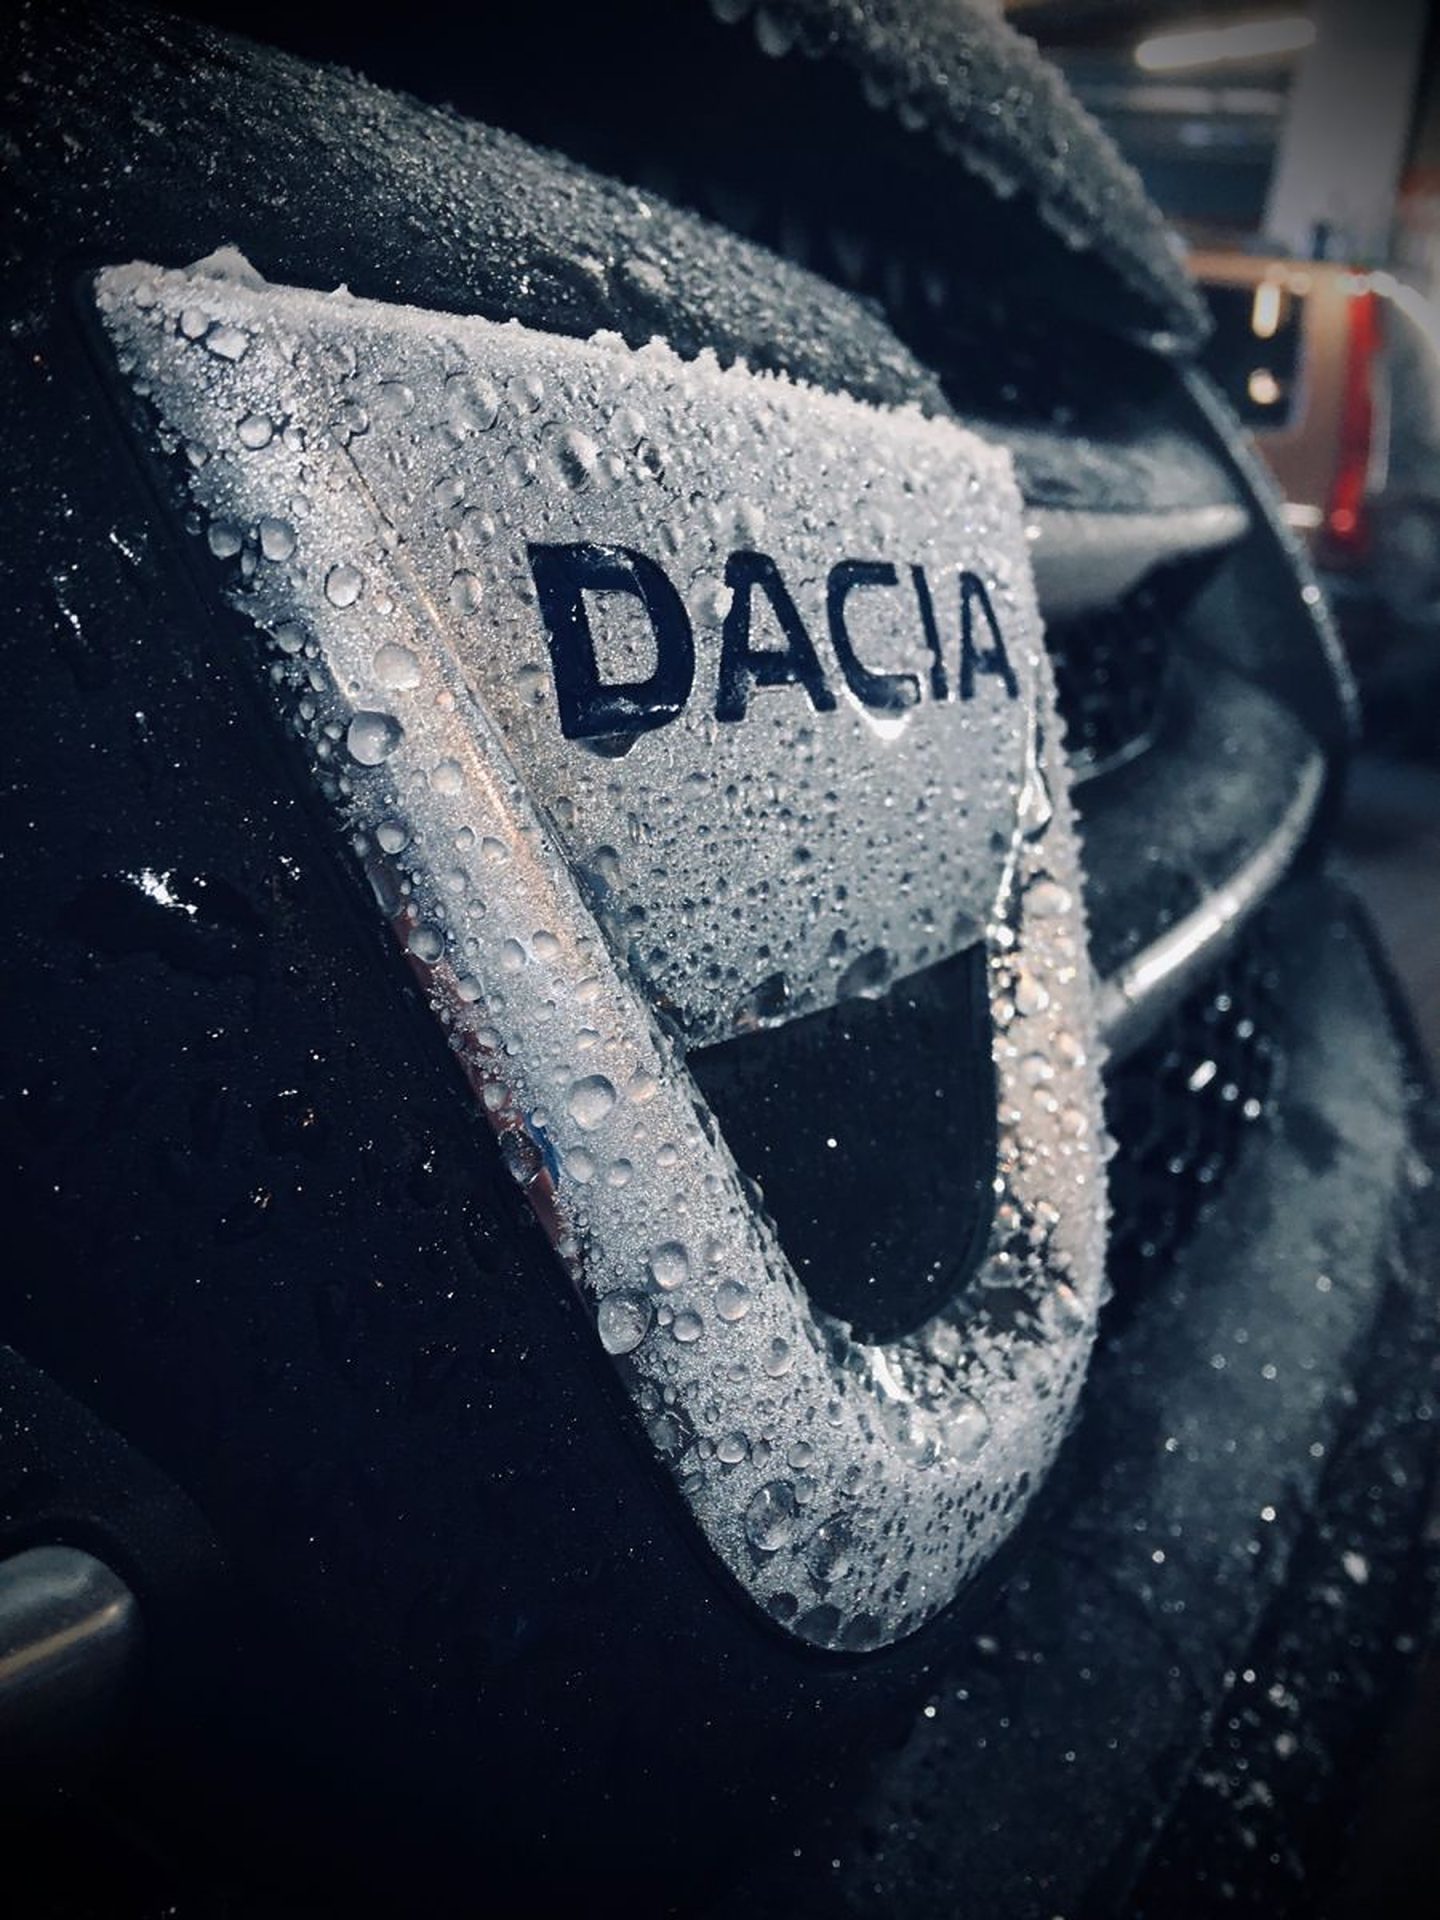 Mașina cu care Dacia a dat lovitura pe piața auto europeană. Modelul, apreciat de mulți șoferi, s-a vândut în număr foarte mare